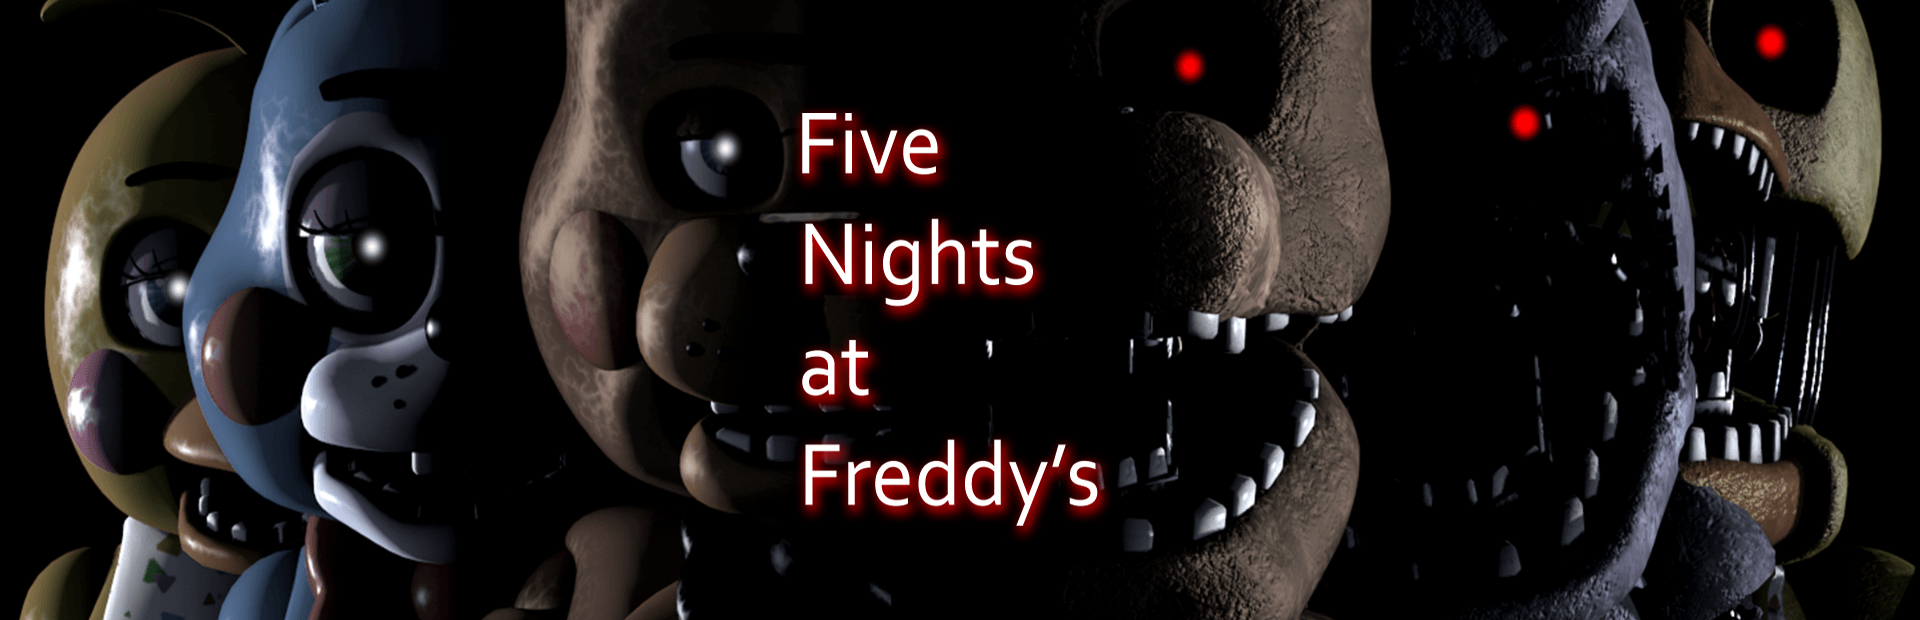 دانلود بازی Five Nights at Freddy's برای پی سی | گیمباتو